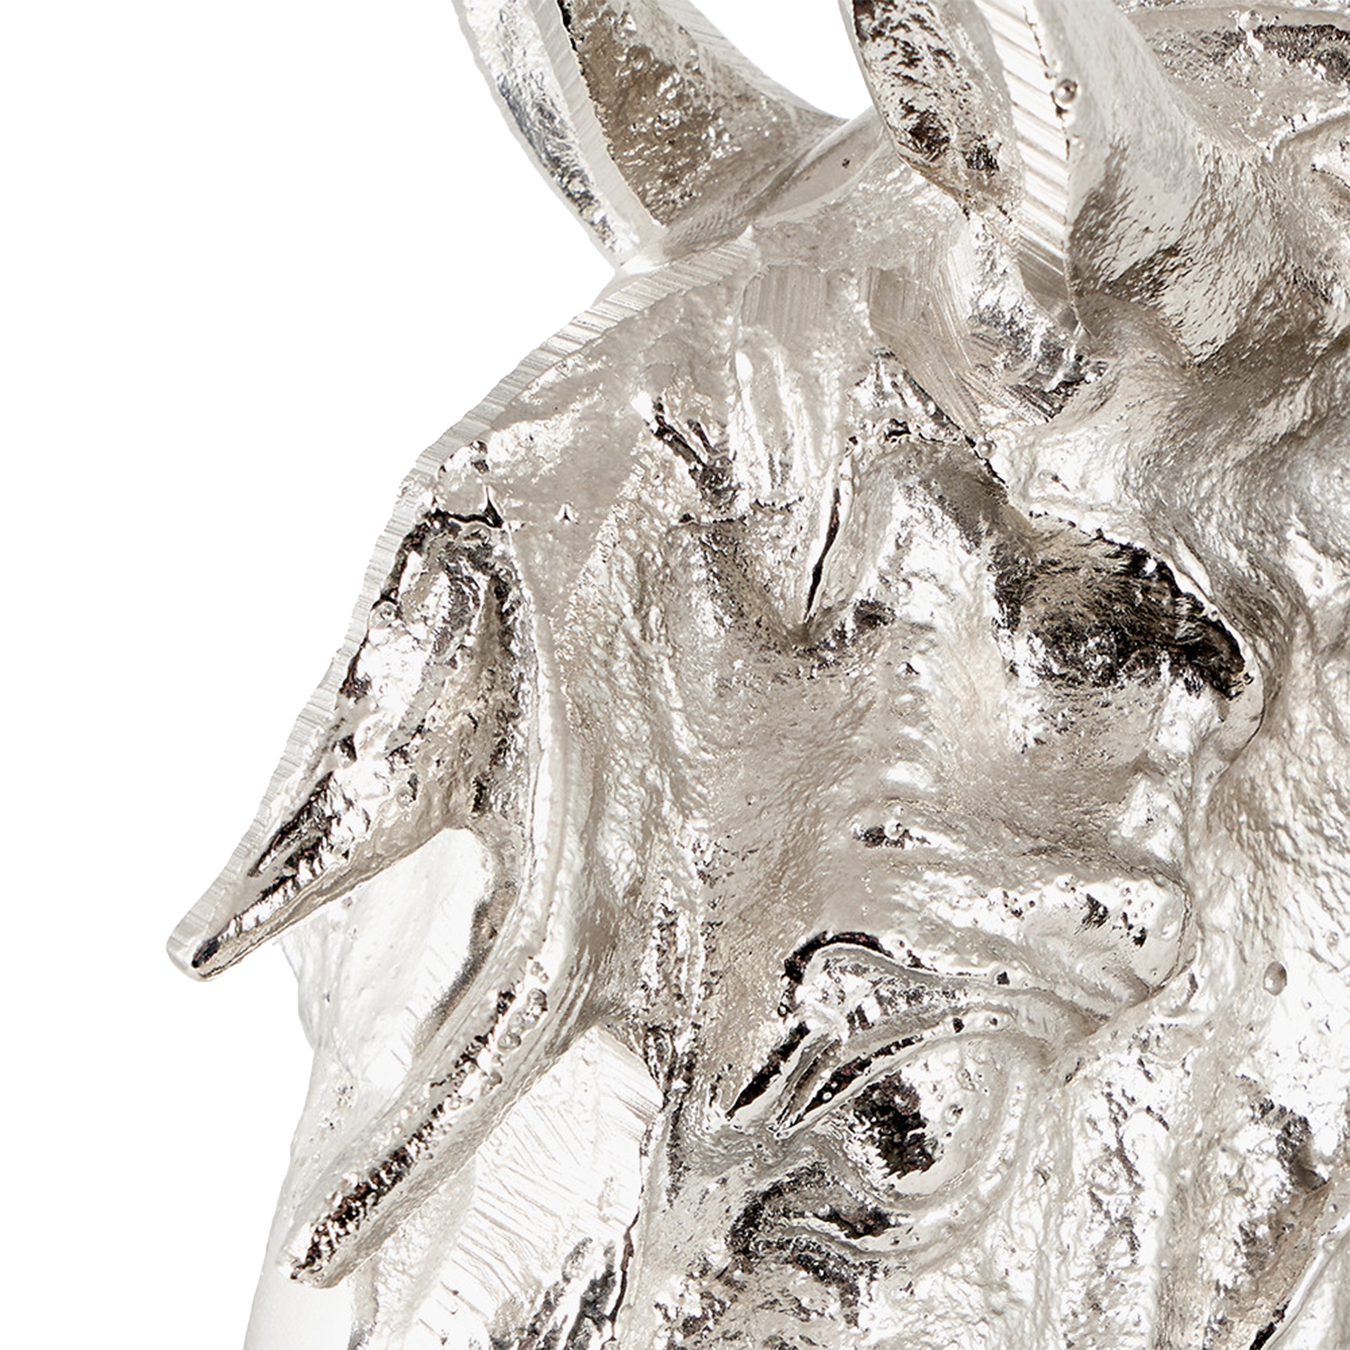 Silver Horse Head